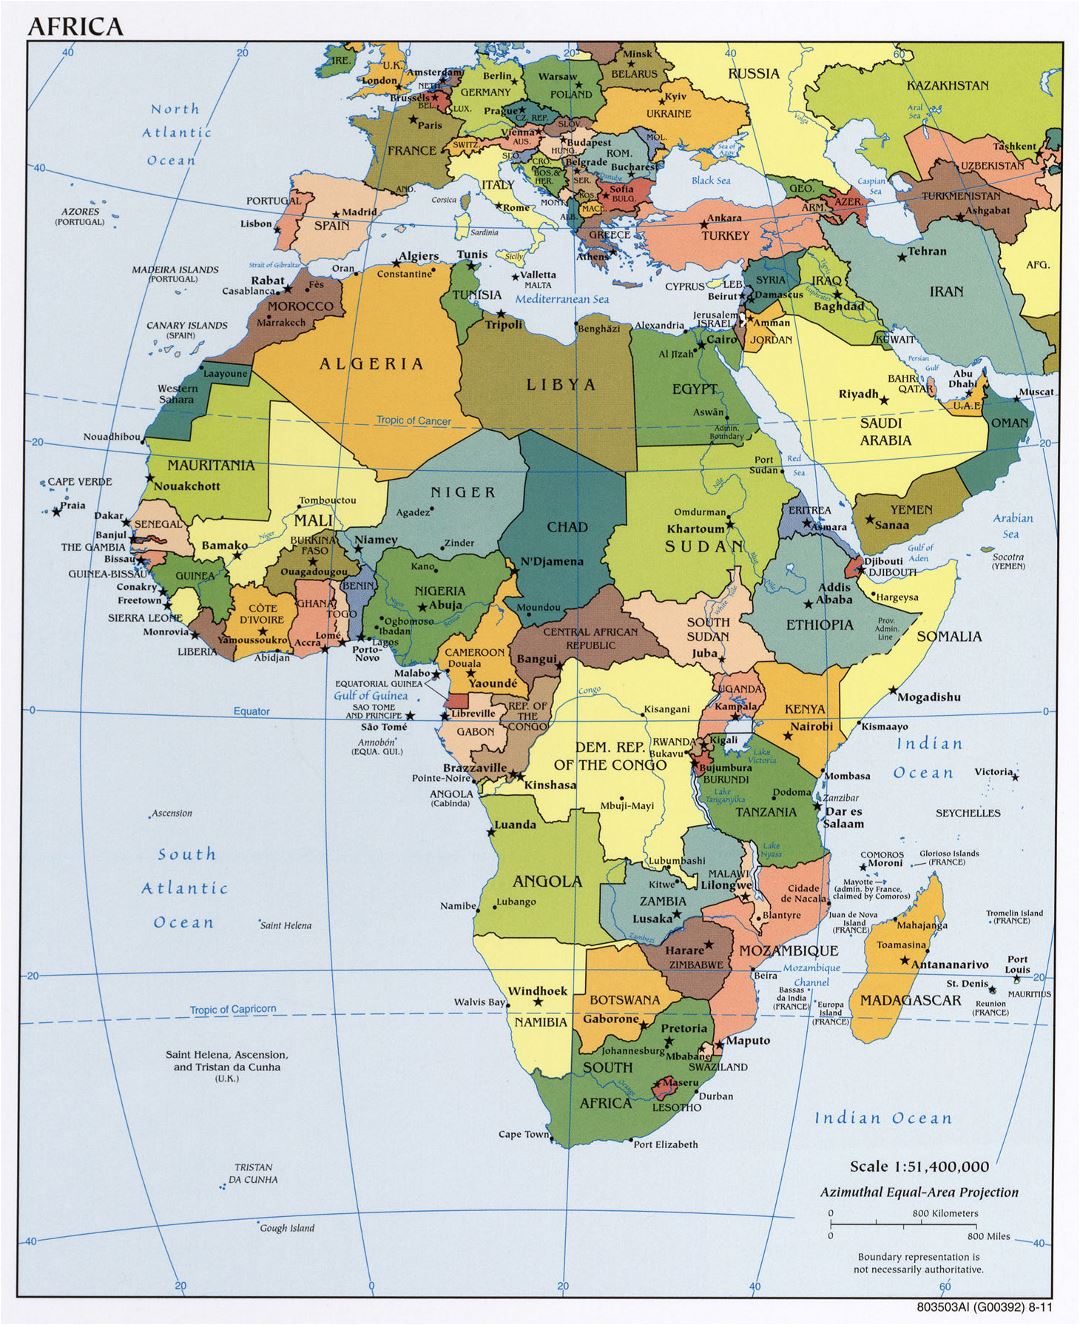 Mapa político grande de África con las principales ciudades y capitales - 2011